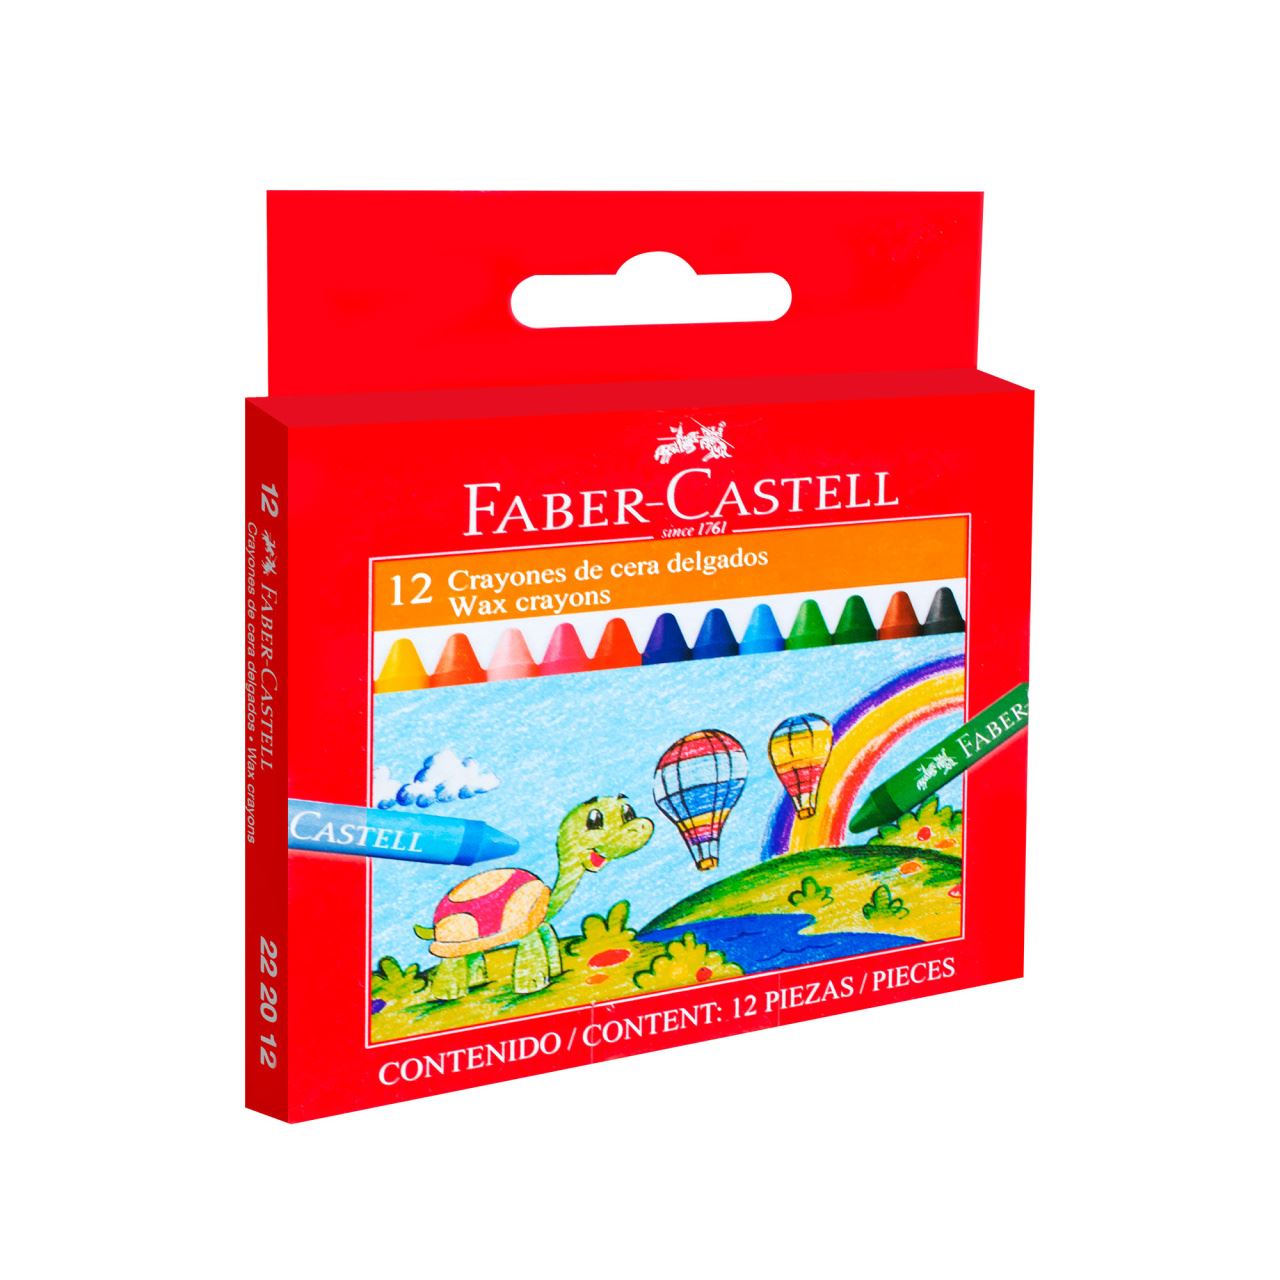 Faber-Castell - Crayones de cera delgados estuche x12